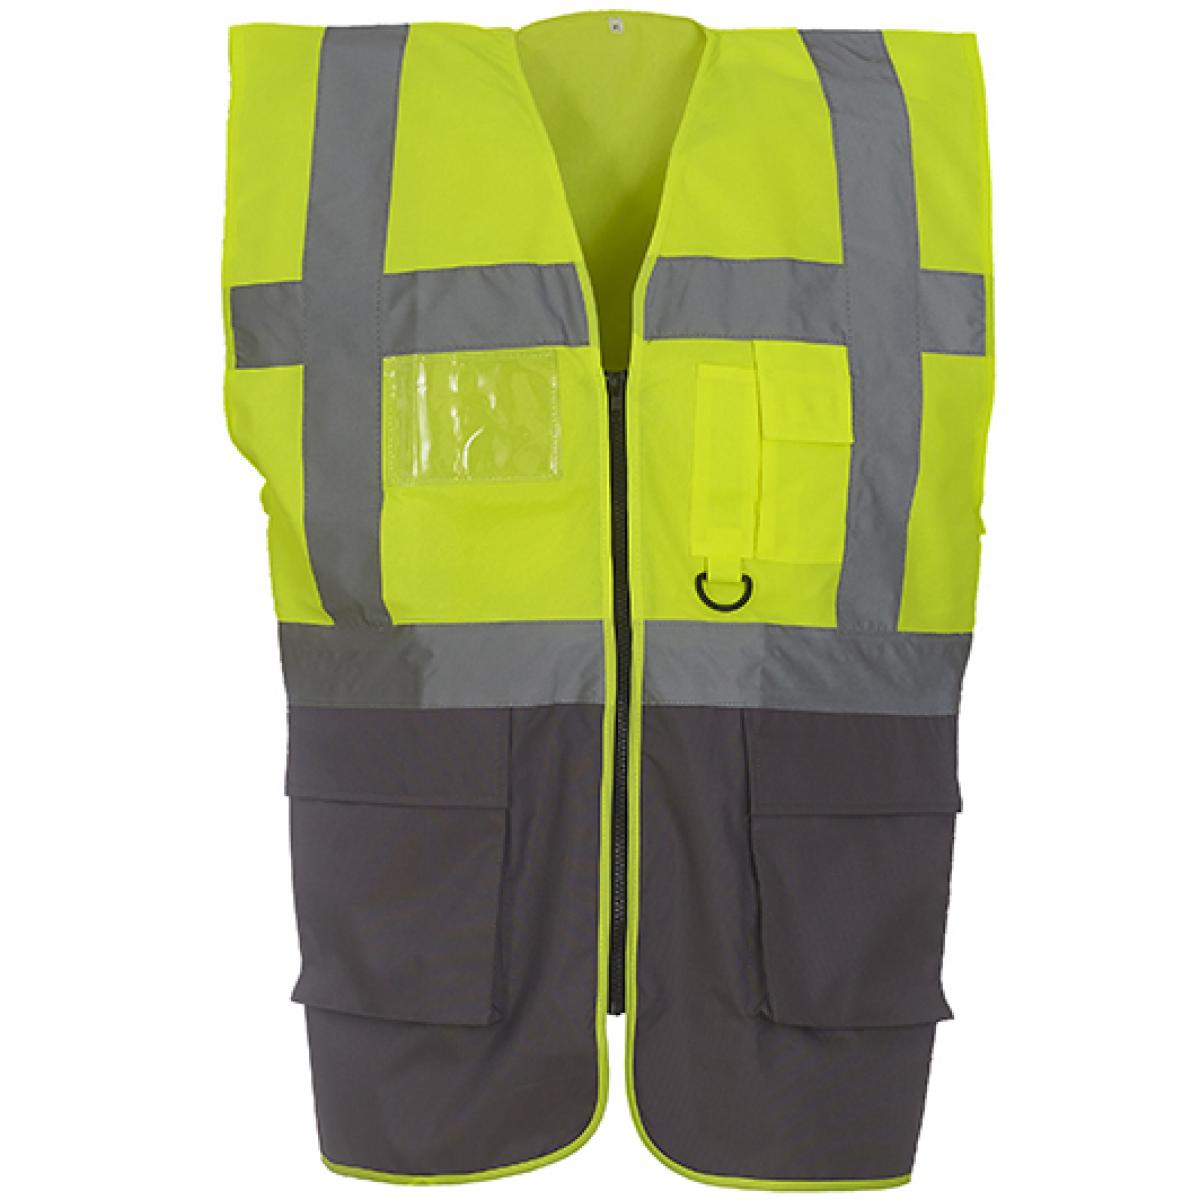 Hersteller: YOKO Herstellernummer: HVW801 Artikelbezeichnung: Herren Multi-Functional Executive Waistcoat Farbe: Hi-Vis Yellow/Grey